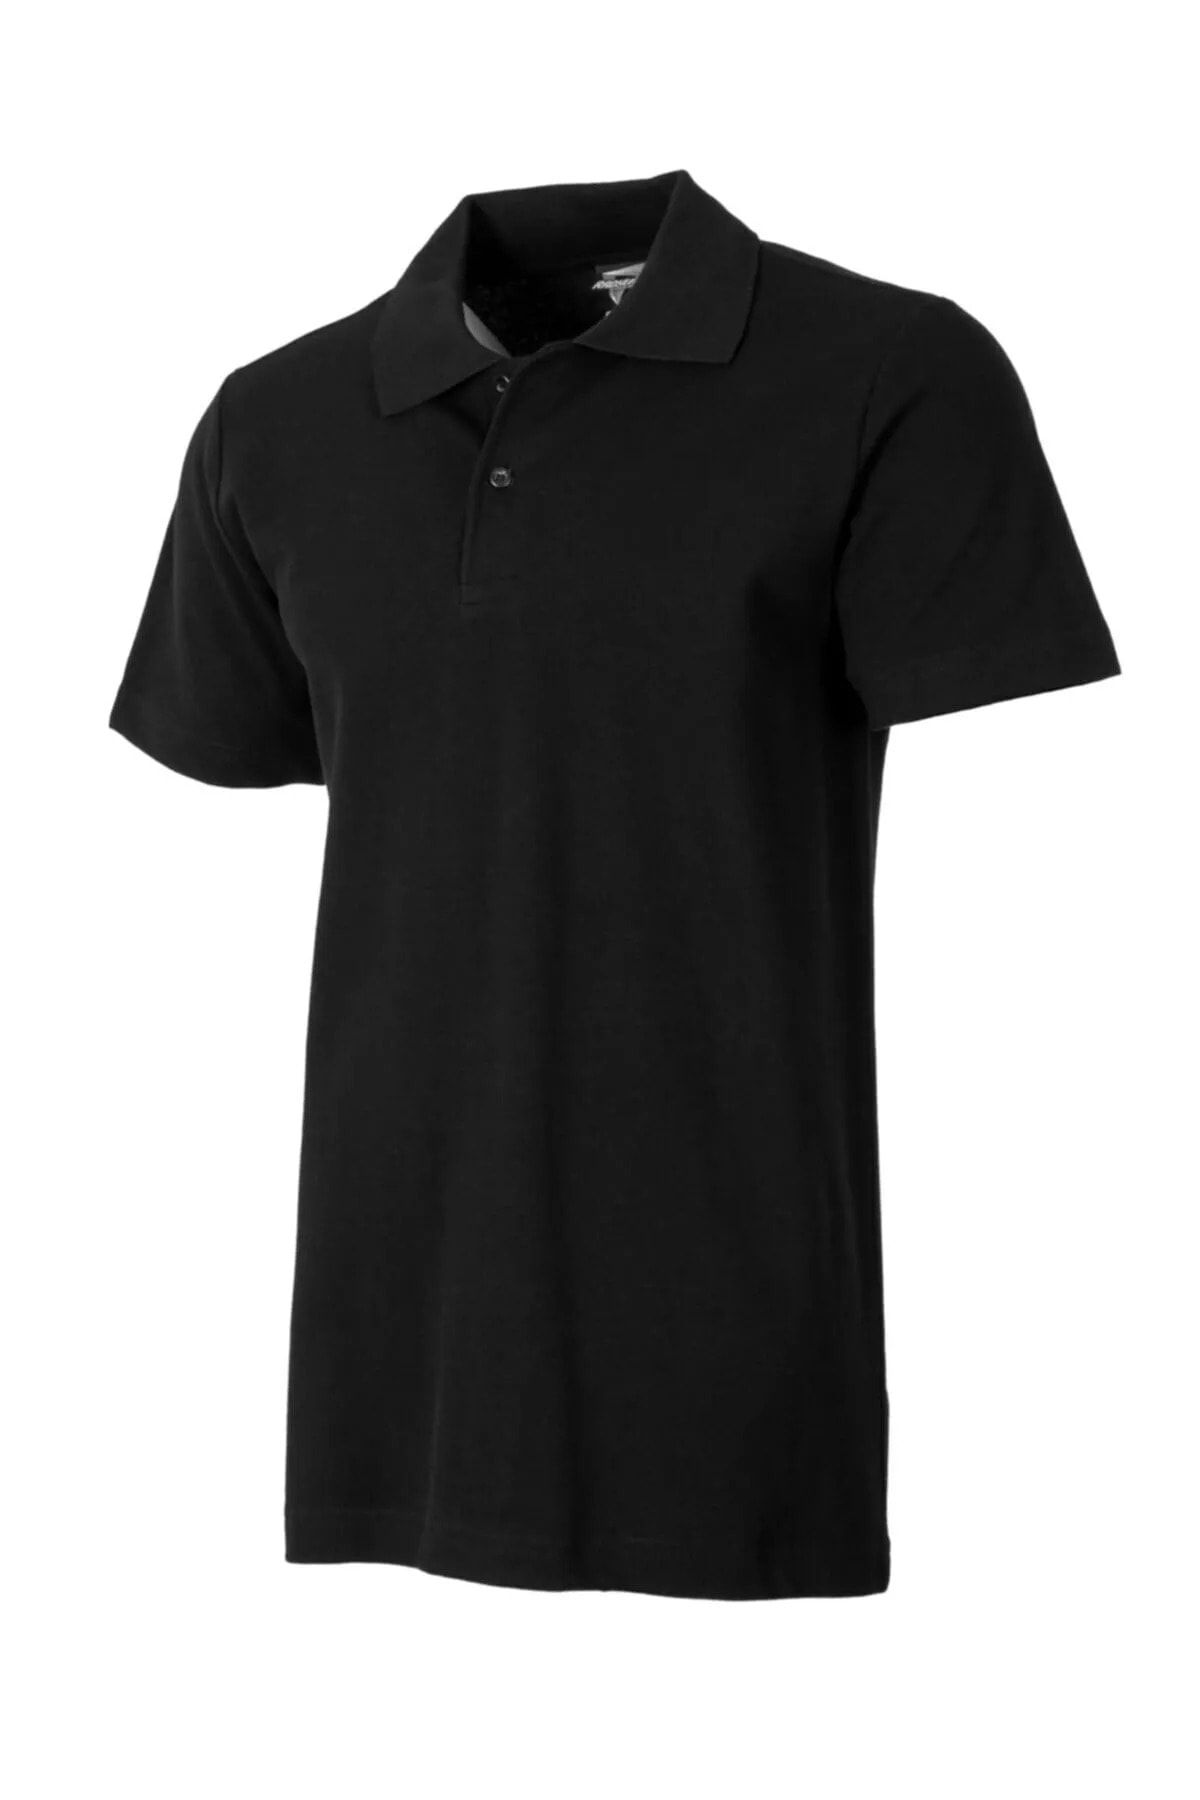 EKZMODA Erkek Siyah Polo Yaka Tişört - Siyah Tisort - Yakali Erkek T-shirt